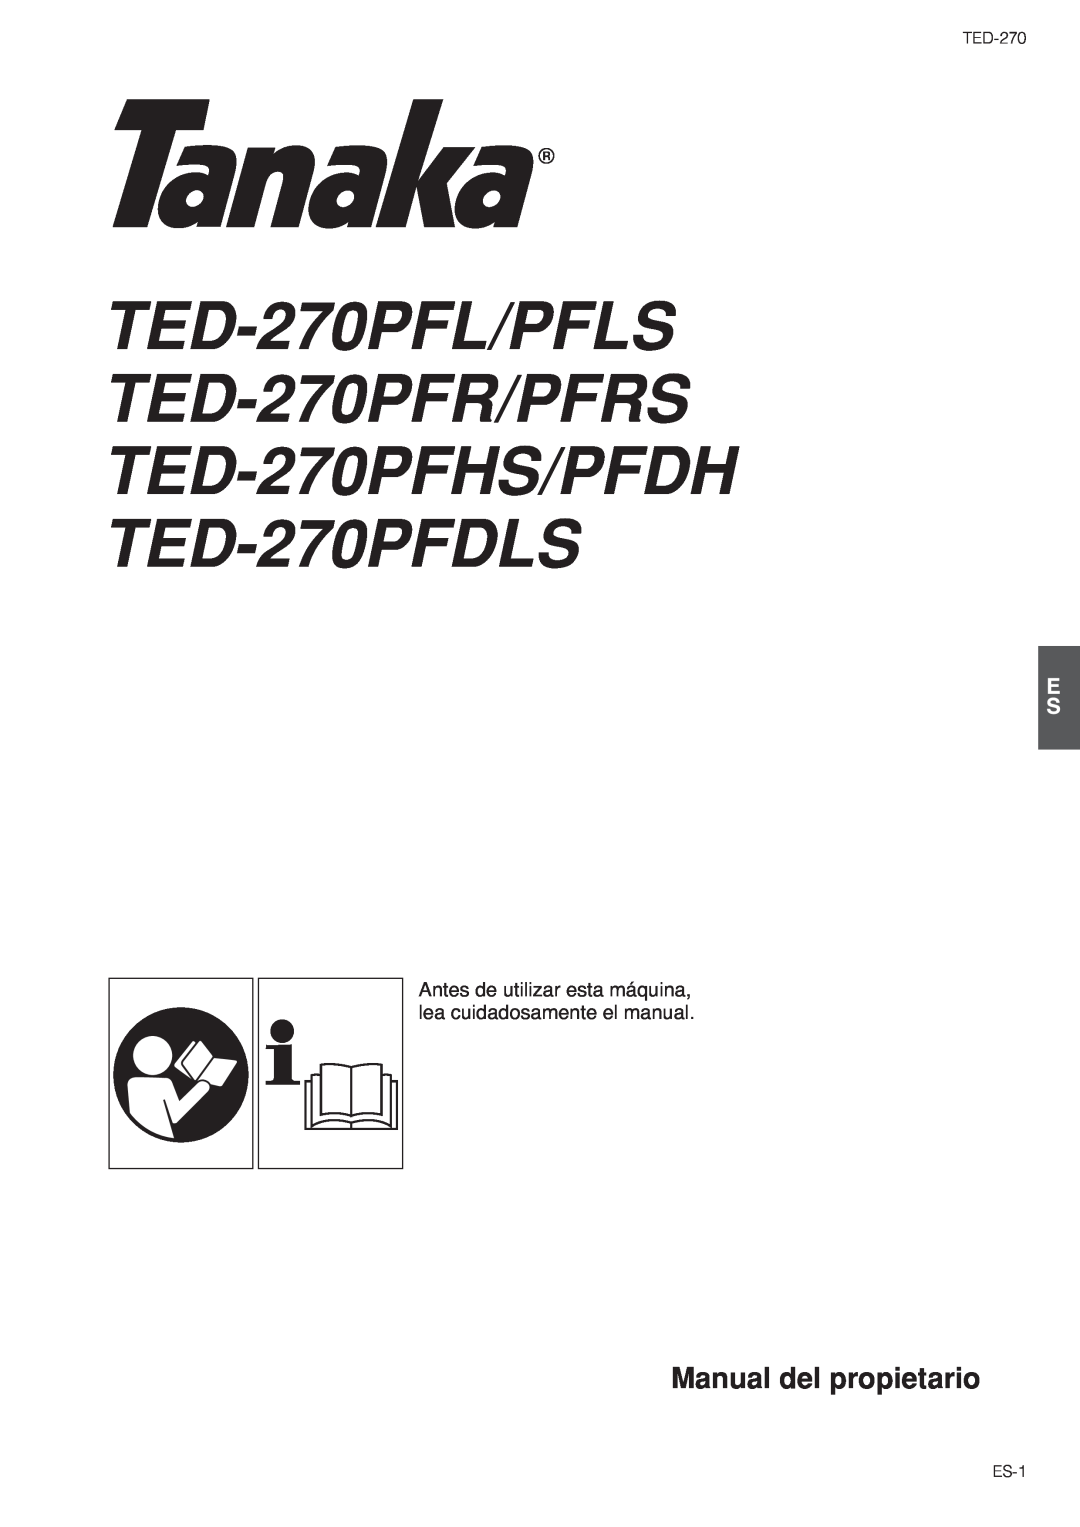 Tanaka TED-270PFL/PFLS Manual del propietario, Antes de utilizar esta máquina, lea cuidadosamente el manual, ES-1 